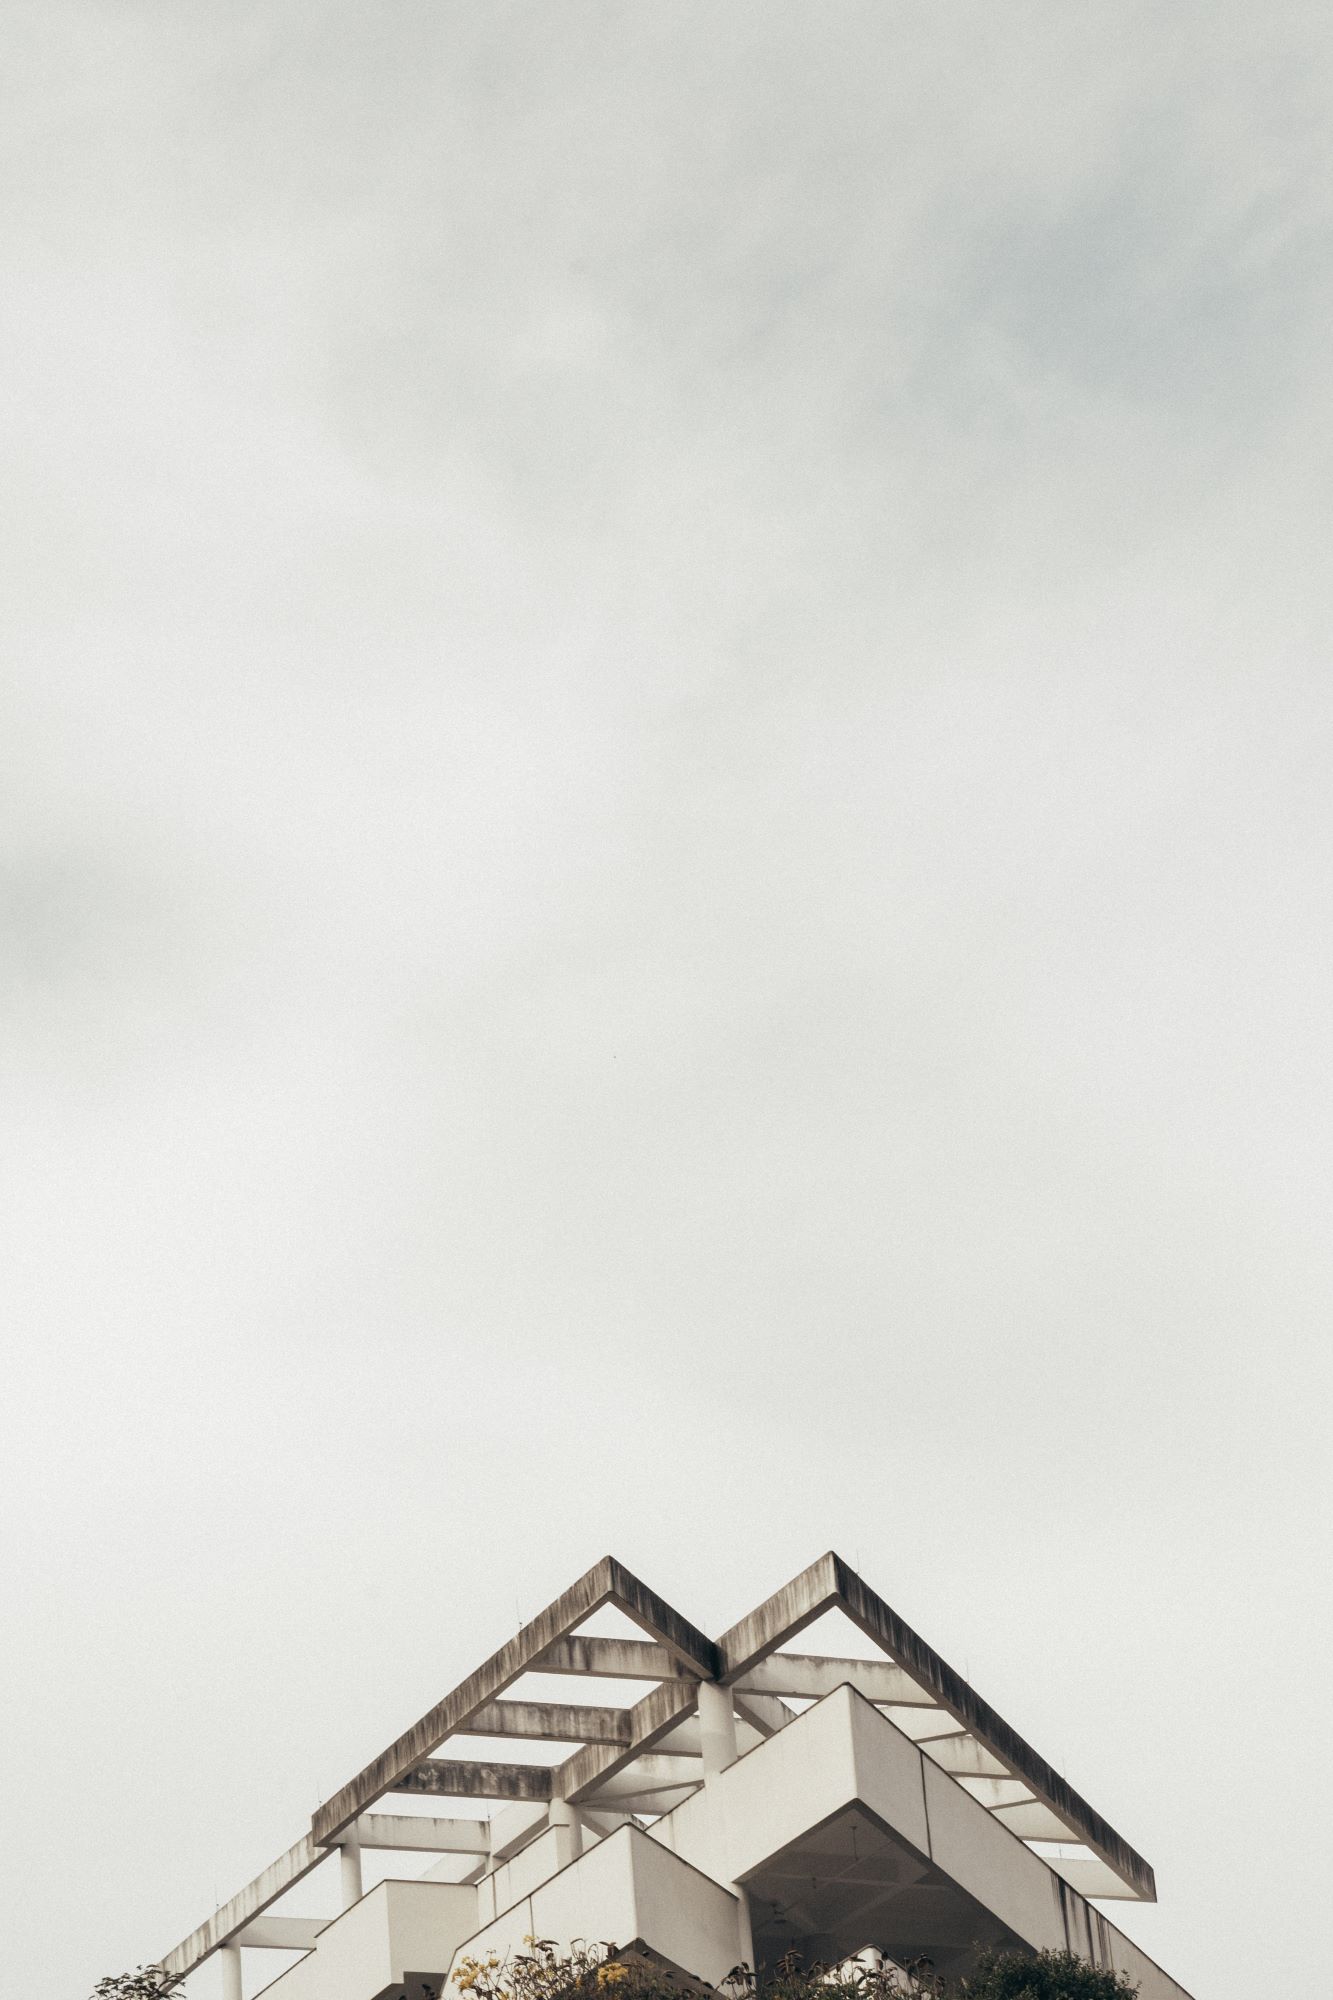 Gräuliches Bild das vor allem Himmel zeigt aber im Anschnitt auch das sehr spitze dreieckige Dach eines Hauses